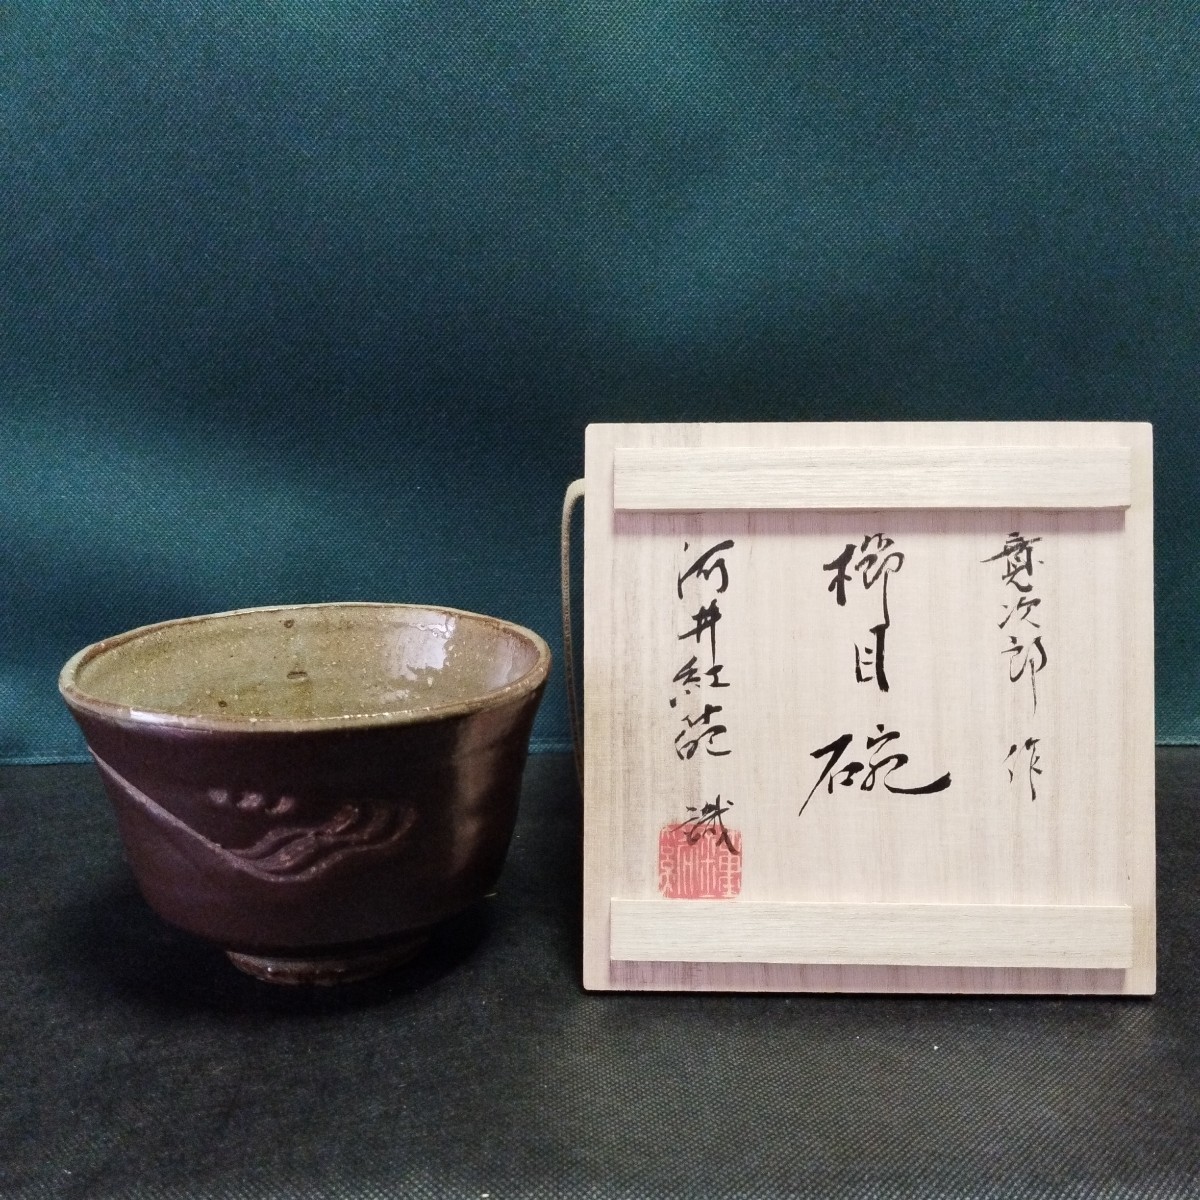 河井寛次郎 緑花碗 穏やかな和の味わいの名品 v435-